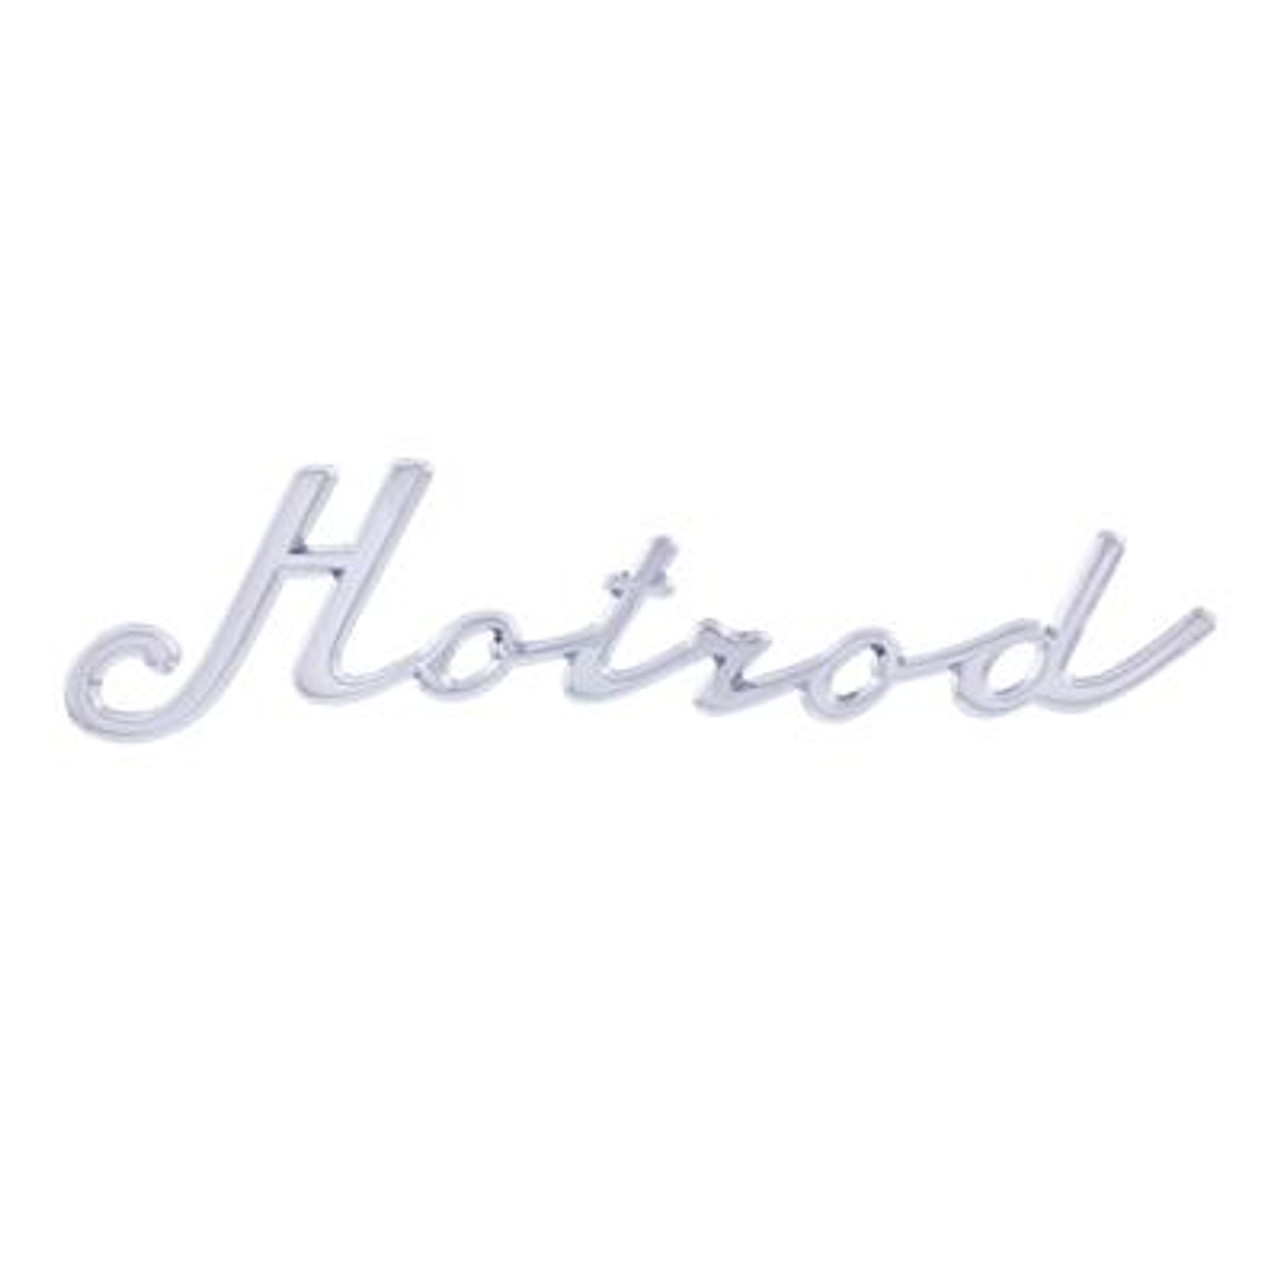 Chrome "Hotrod" Script Emblem With Stud